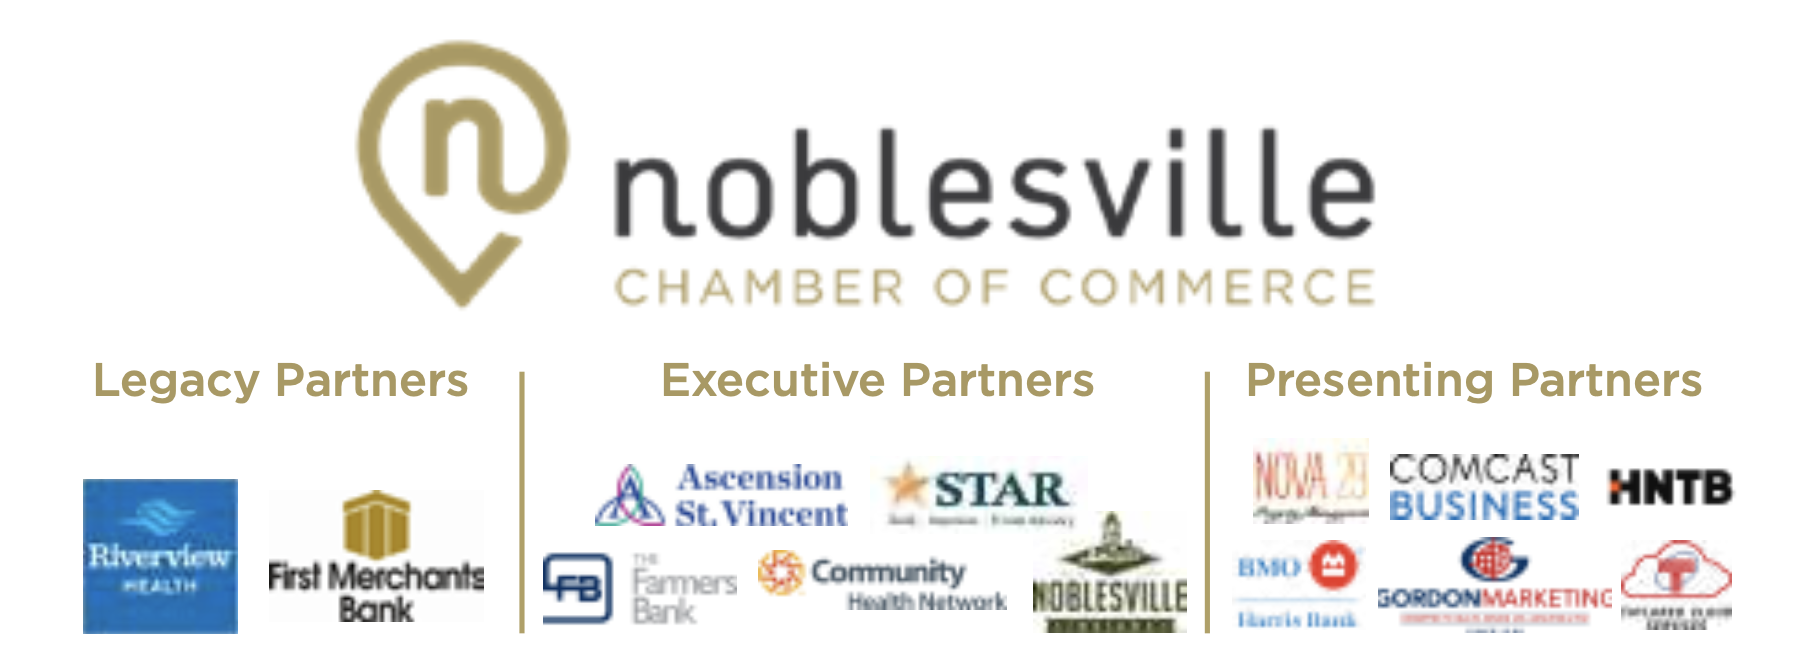 Noblesville Chamber